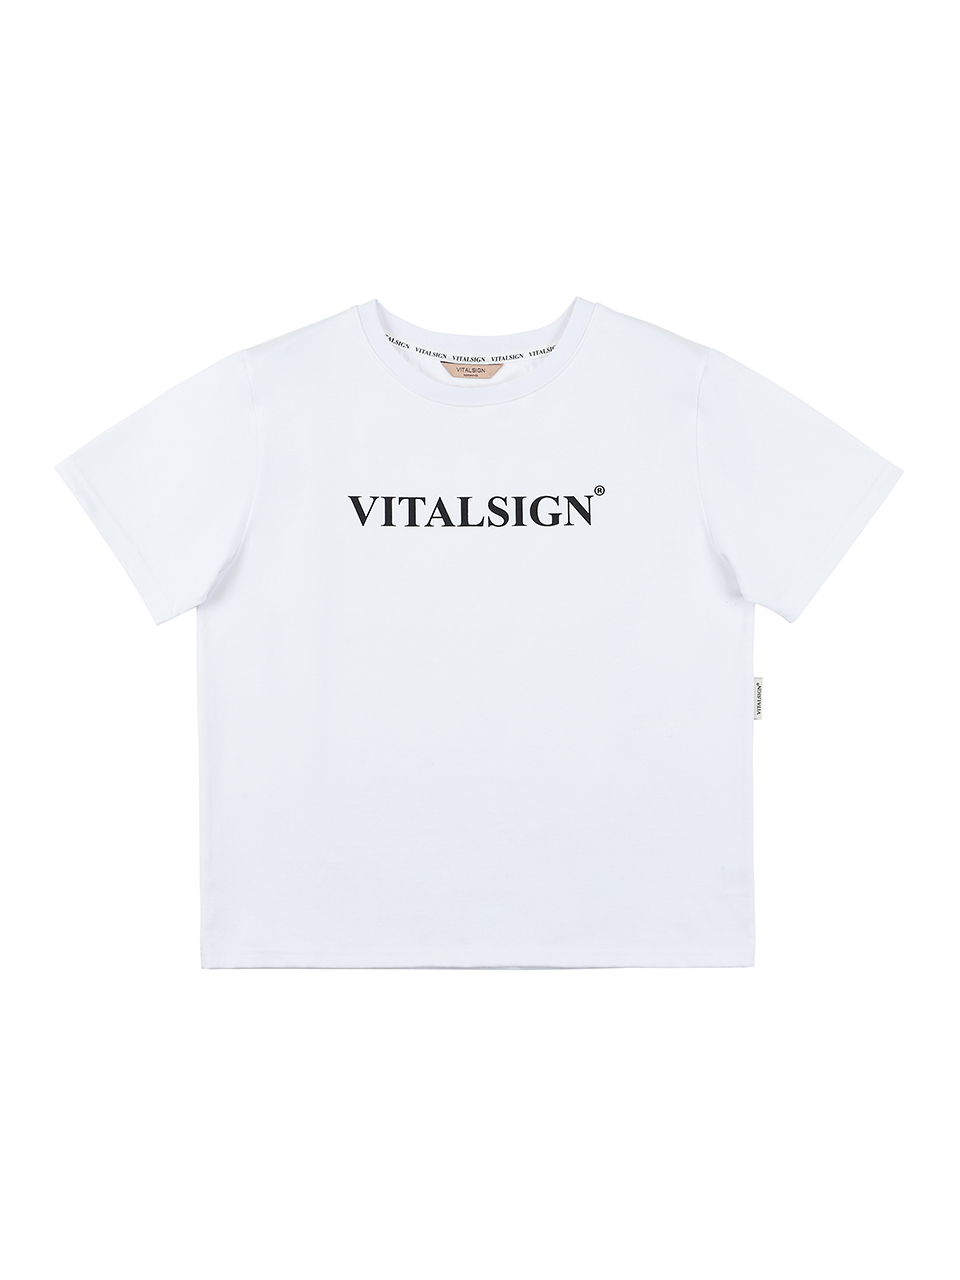 Vitalsign Signature T-shirt (White)